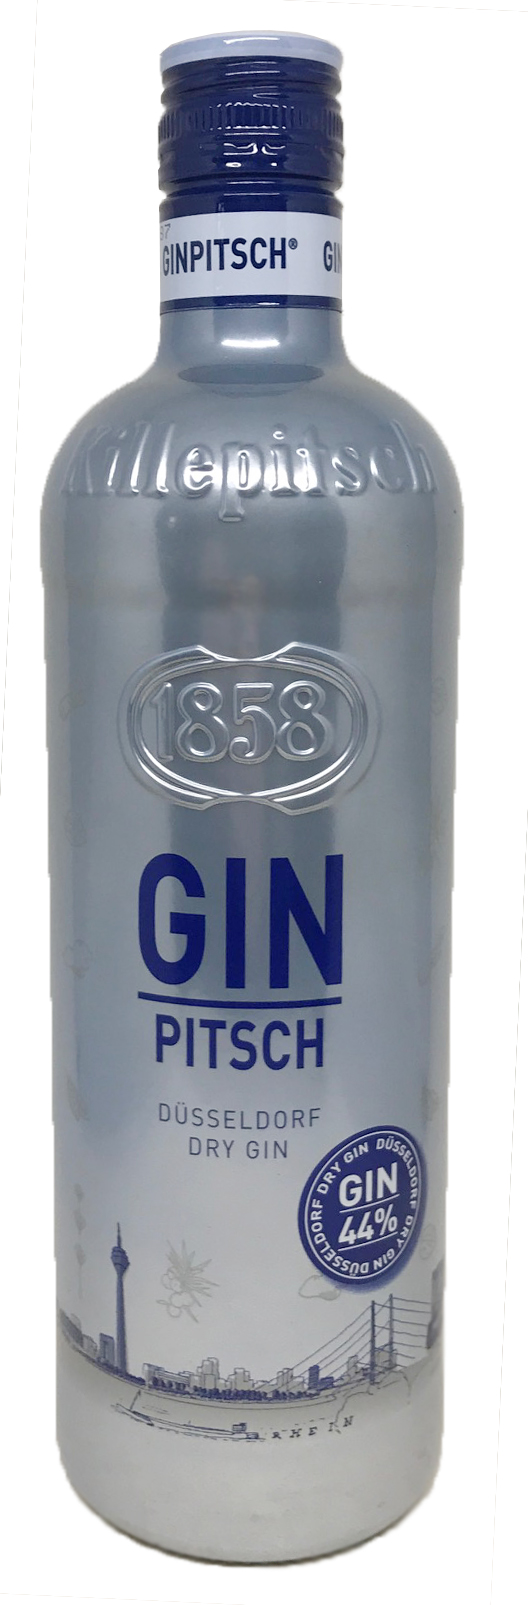 Gin Pitsch Düsseldorf Dry Gin Killepitsch 1858 0,7l / 44%vol.